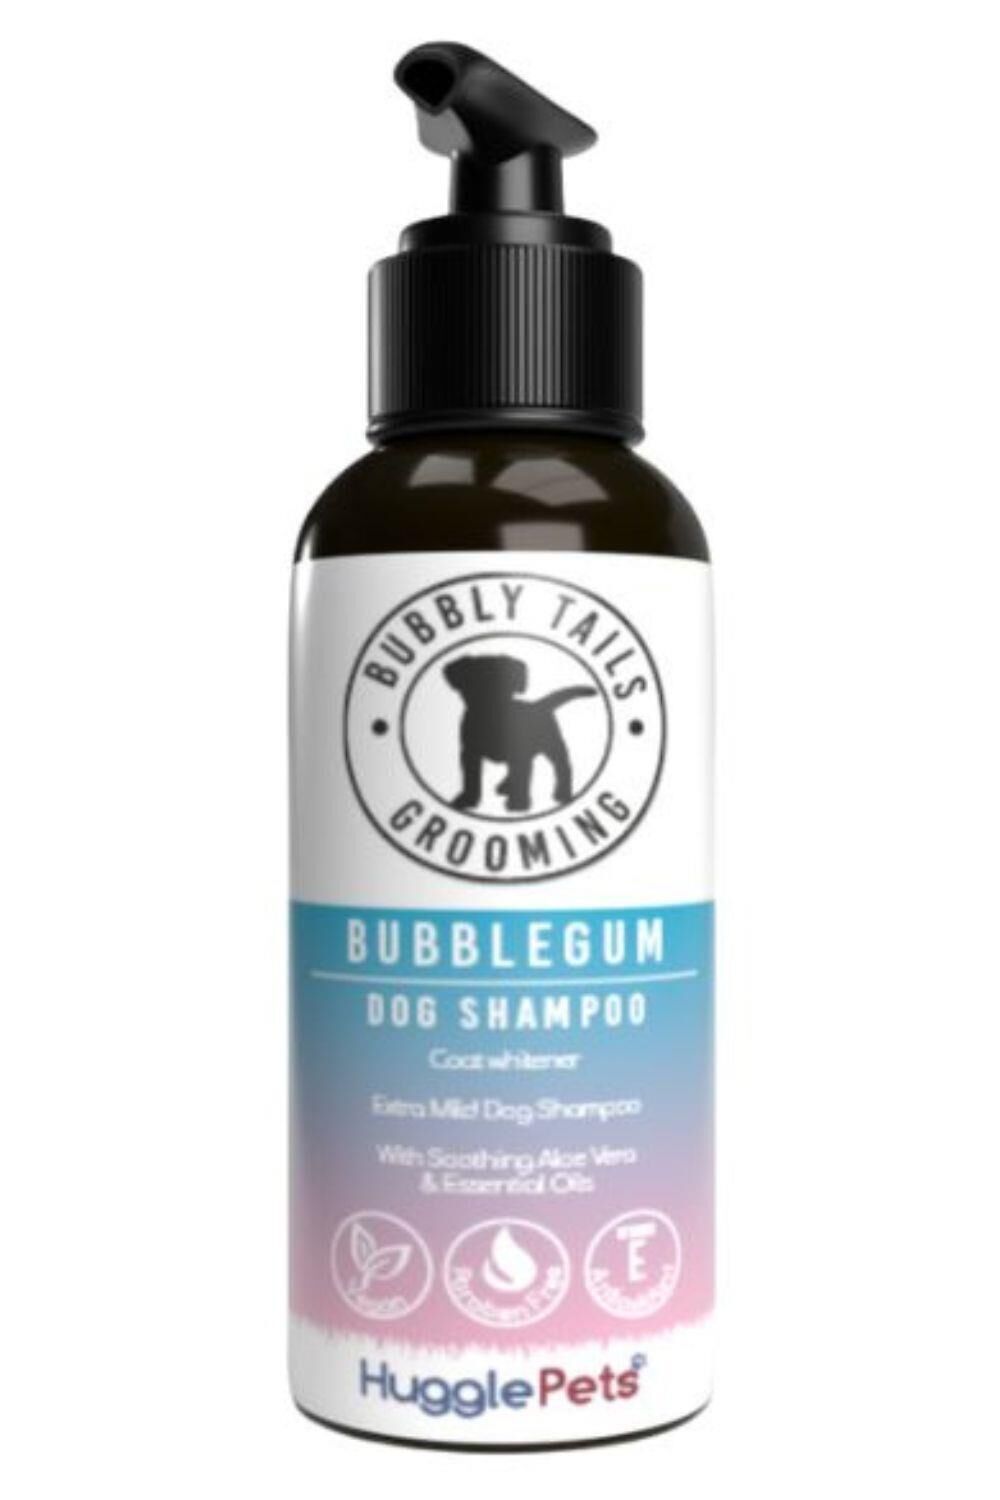 HUGGLEPETS HugglePets Bubbly Tails Bubblegum Whitening Dog Shampoo